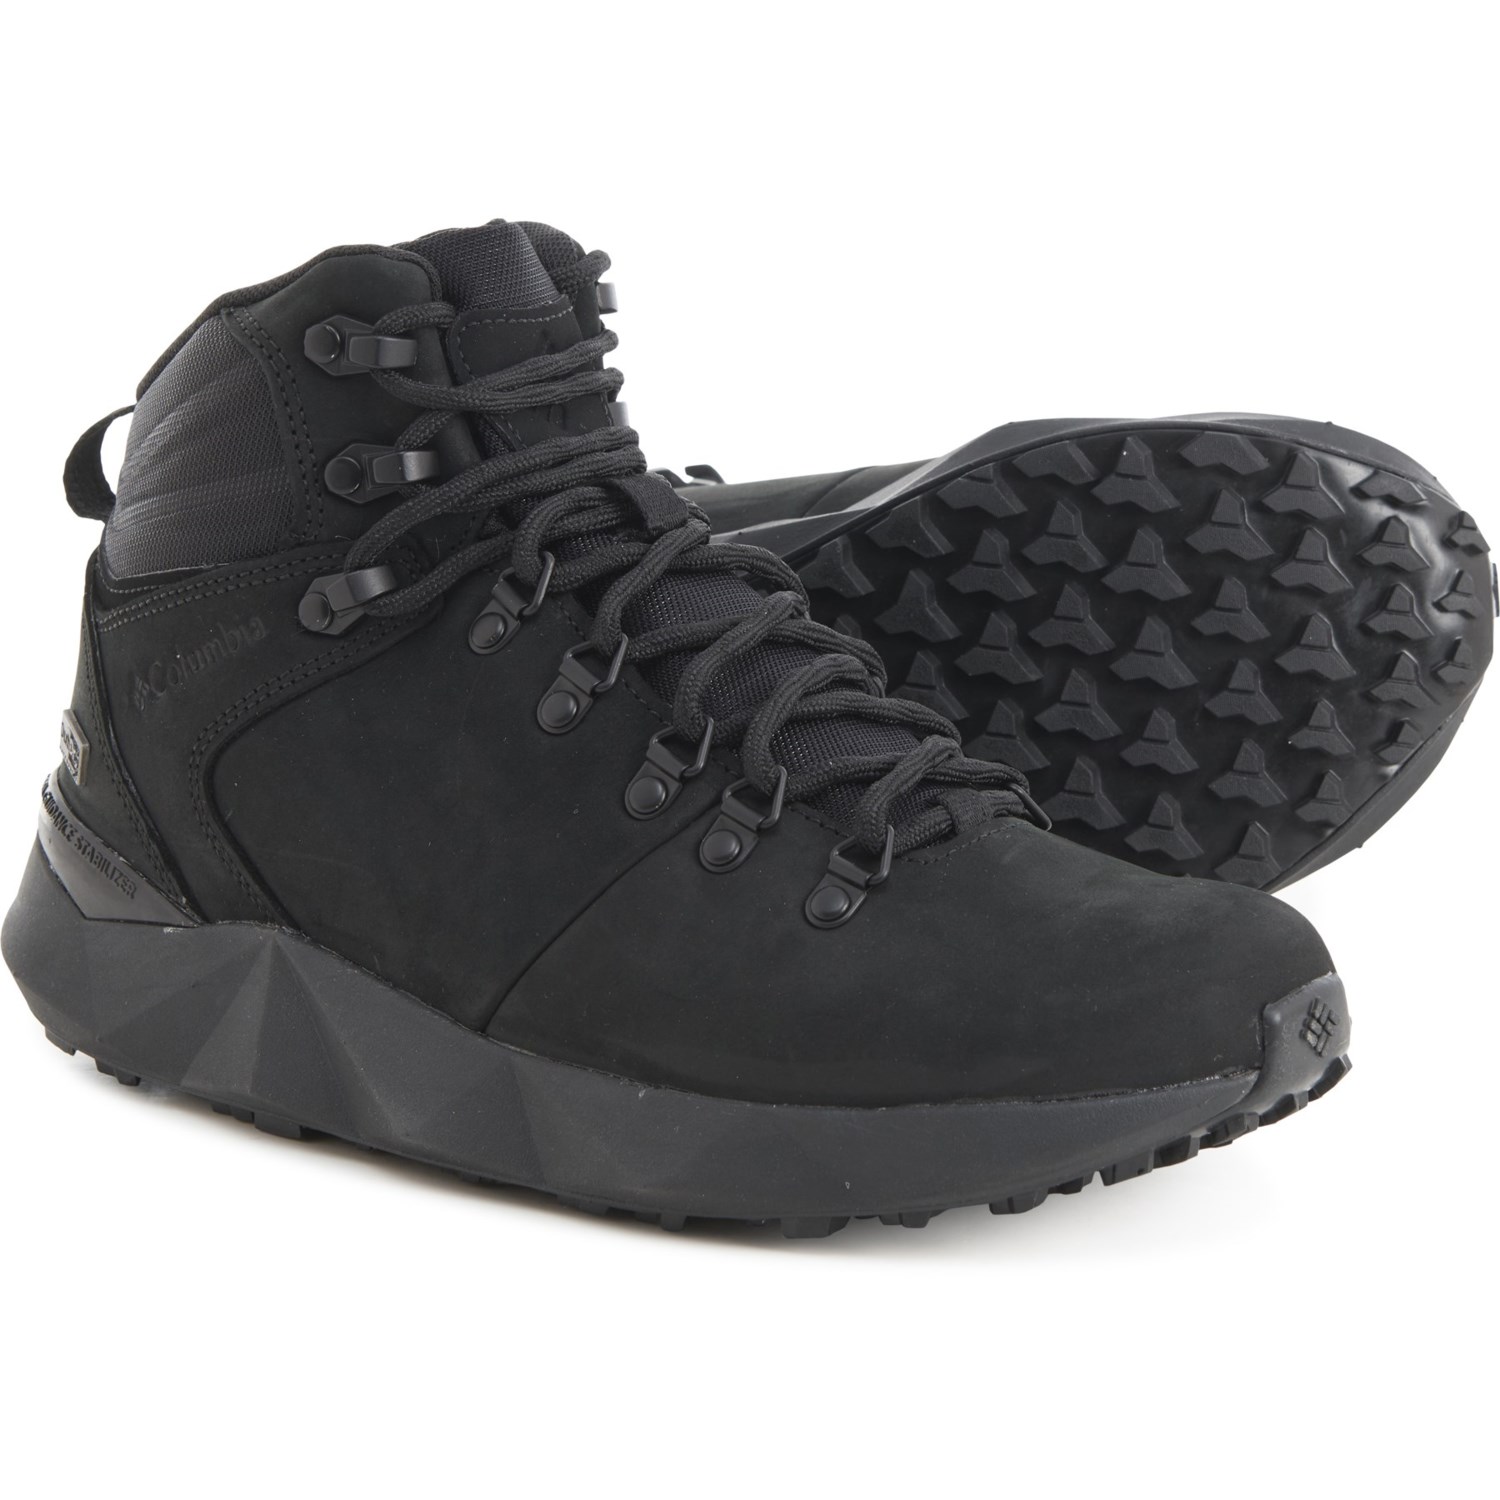 コロンビア (取寄) コロンビアスポーツウェア レディース ファセット シェラ アウトドライ ハイキング ブーツ Columbia Sportswear women Facet Sierra OutDry Hiking Boots (For Women) Black/Black